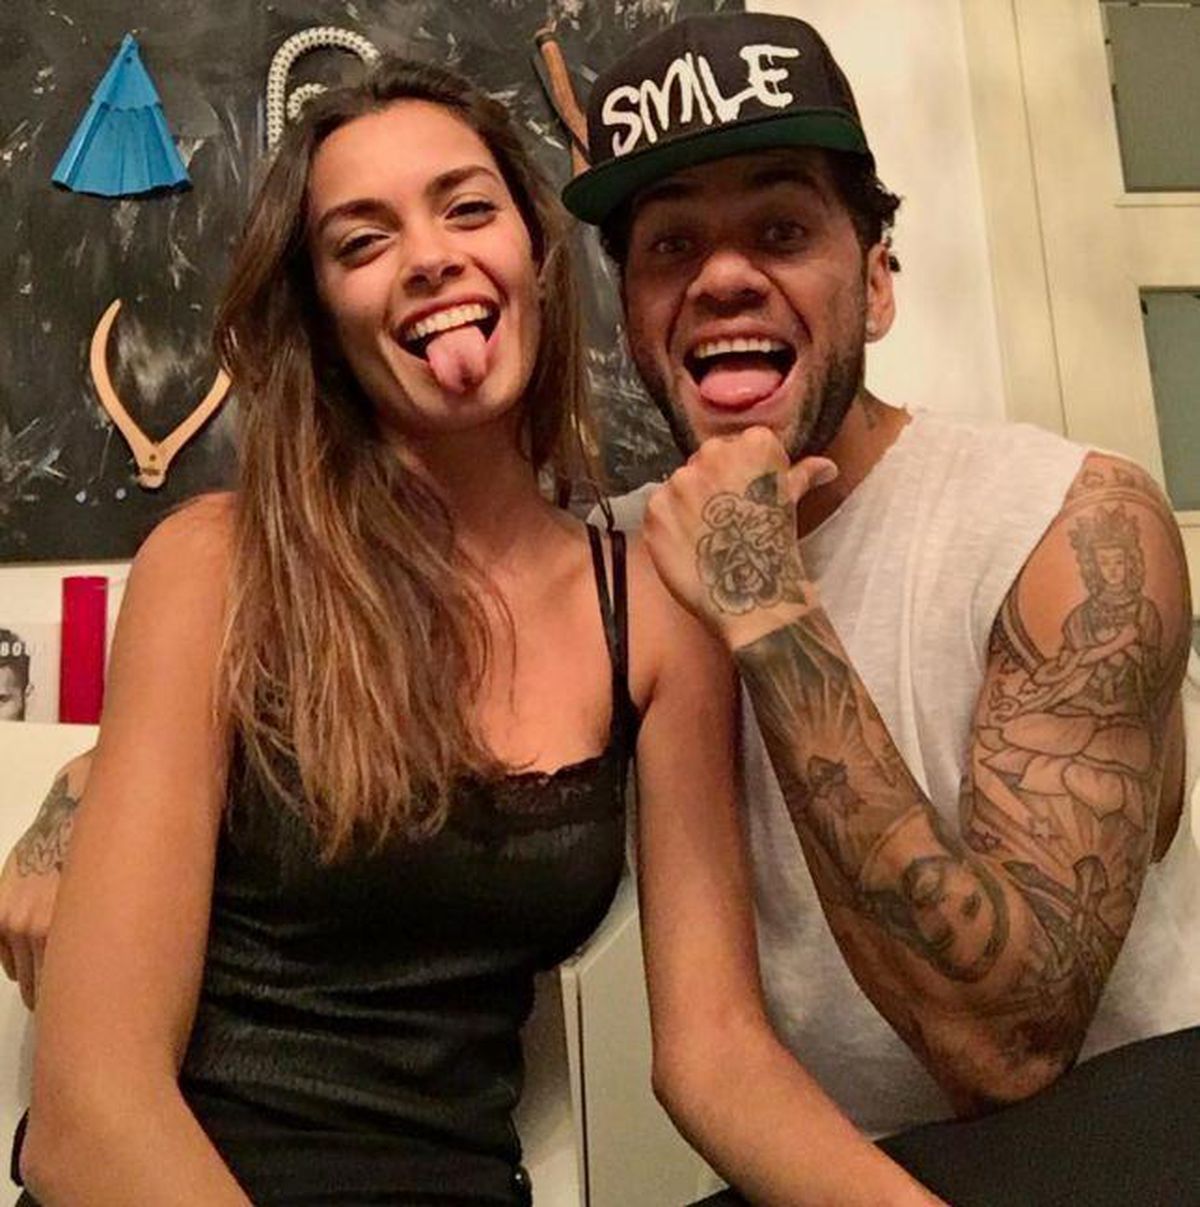 Soția lui Dani Alves a anunțat încetarea relației cu jucătorul acuzat de viol printr-o scrisoare tulburătoare: „M-a rupt în mii de bucăți”